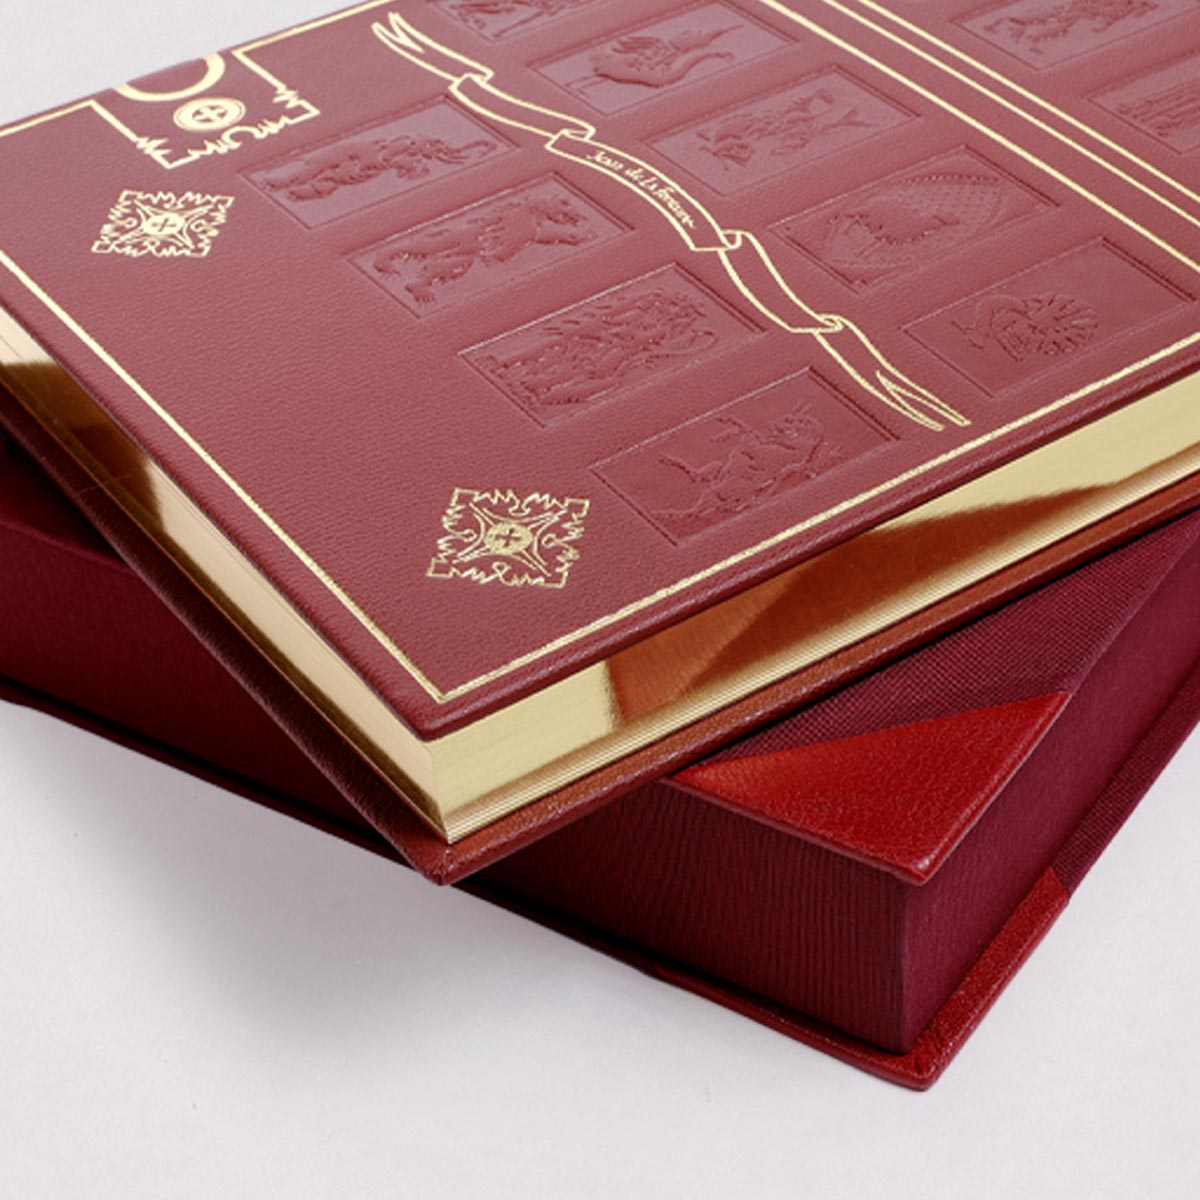 Les Fables de La Fontaine livre de collection édition LARROQUE rouge